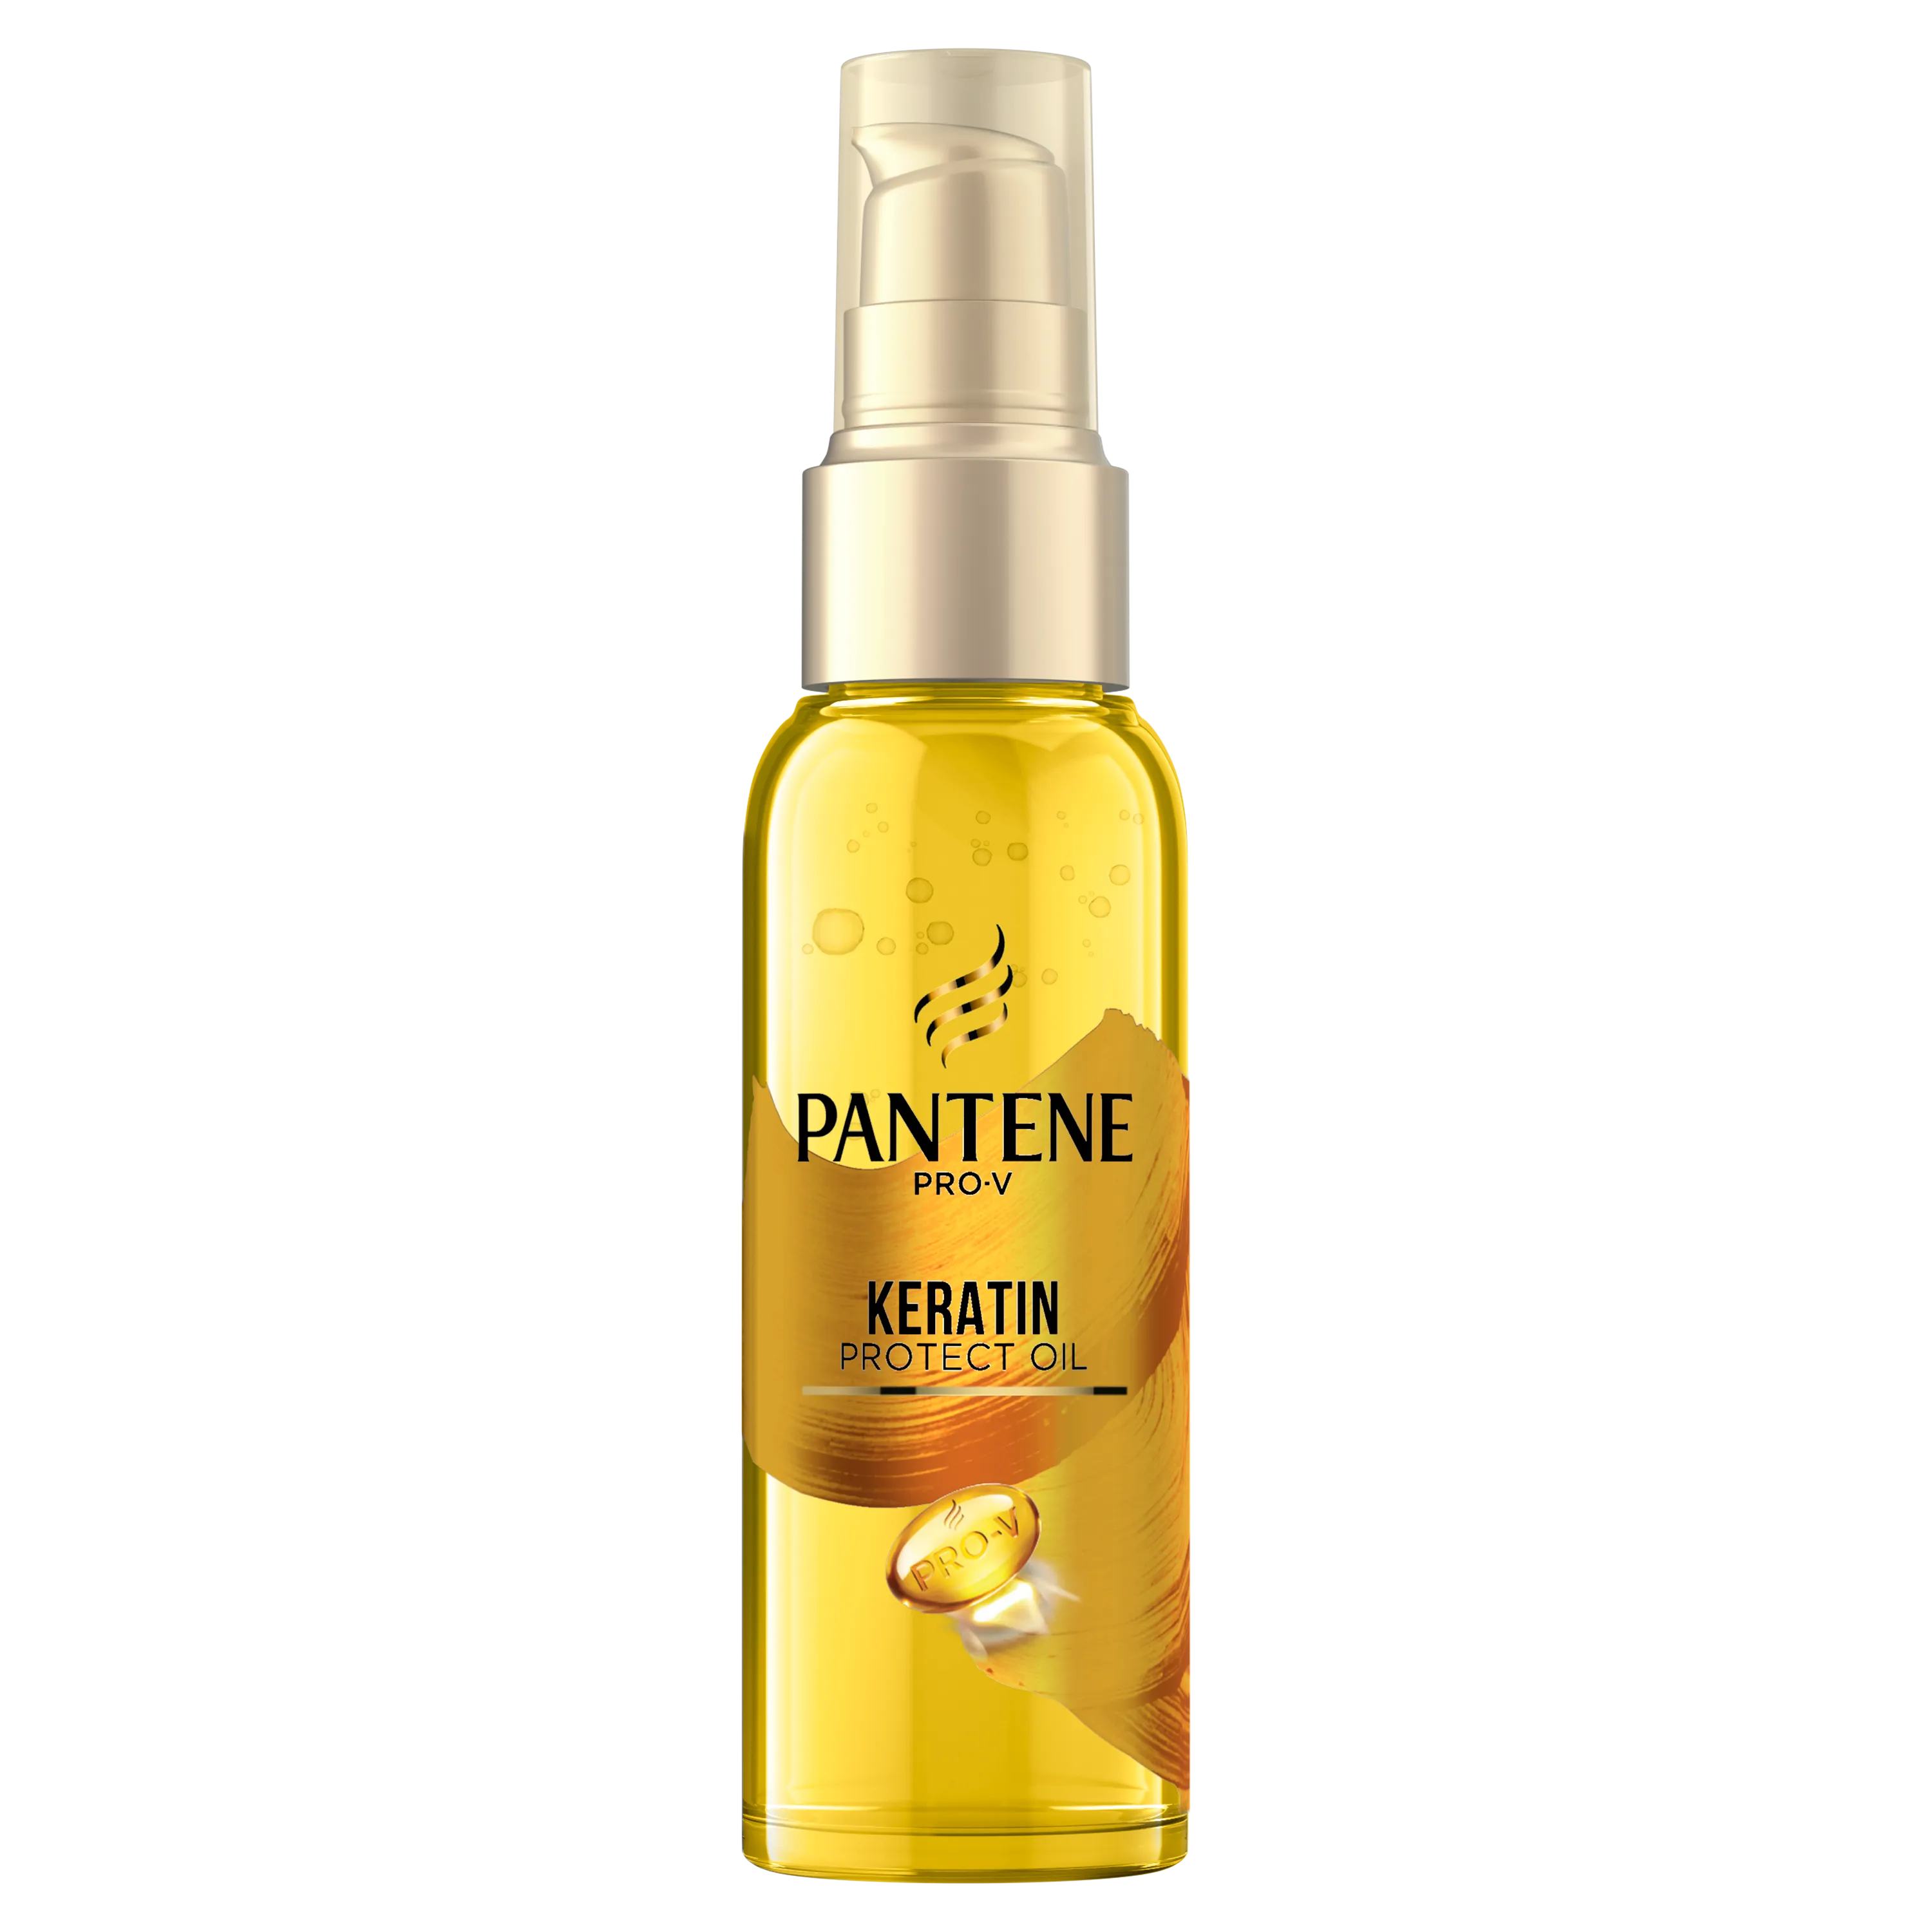 Pantene Pro-V Keratin Protect Oil olejek do włosów z keratyną, 100 ml